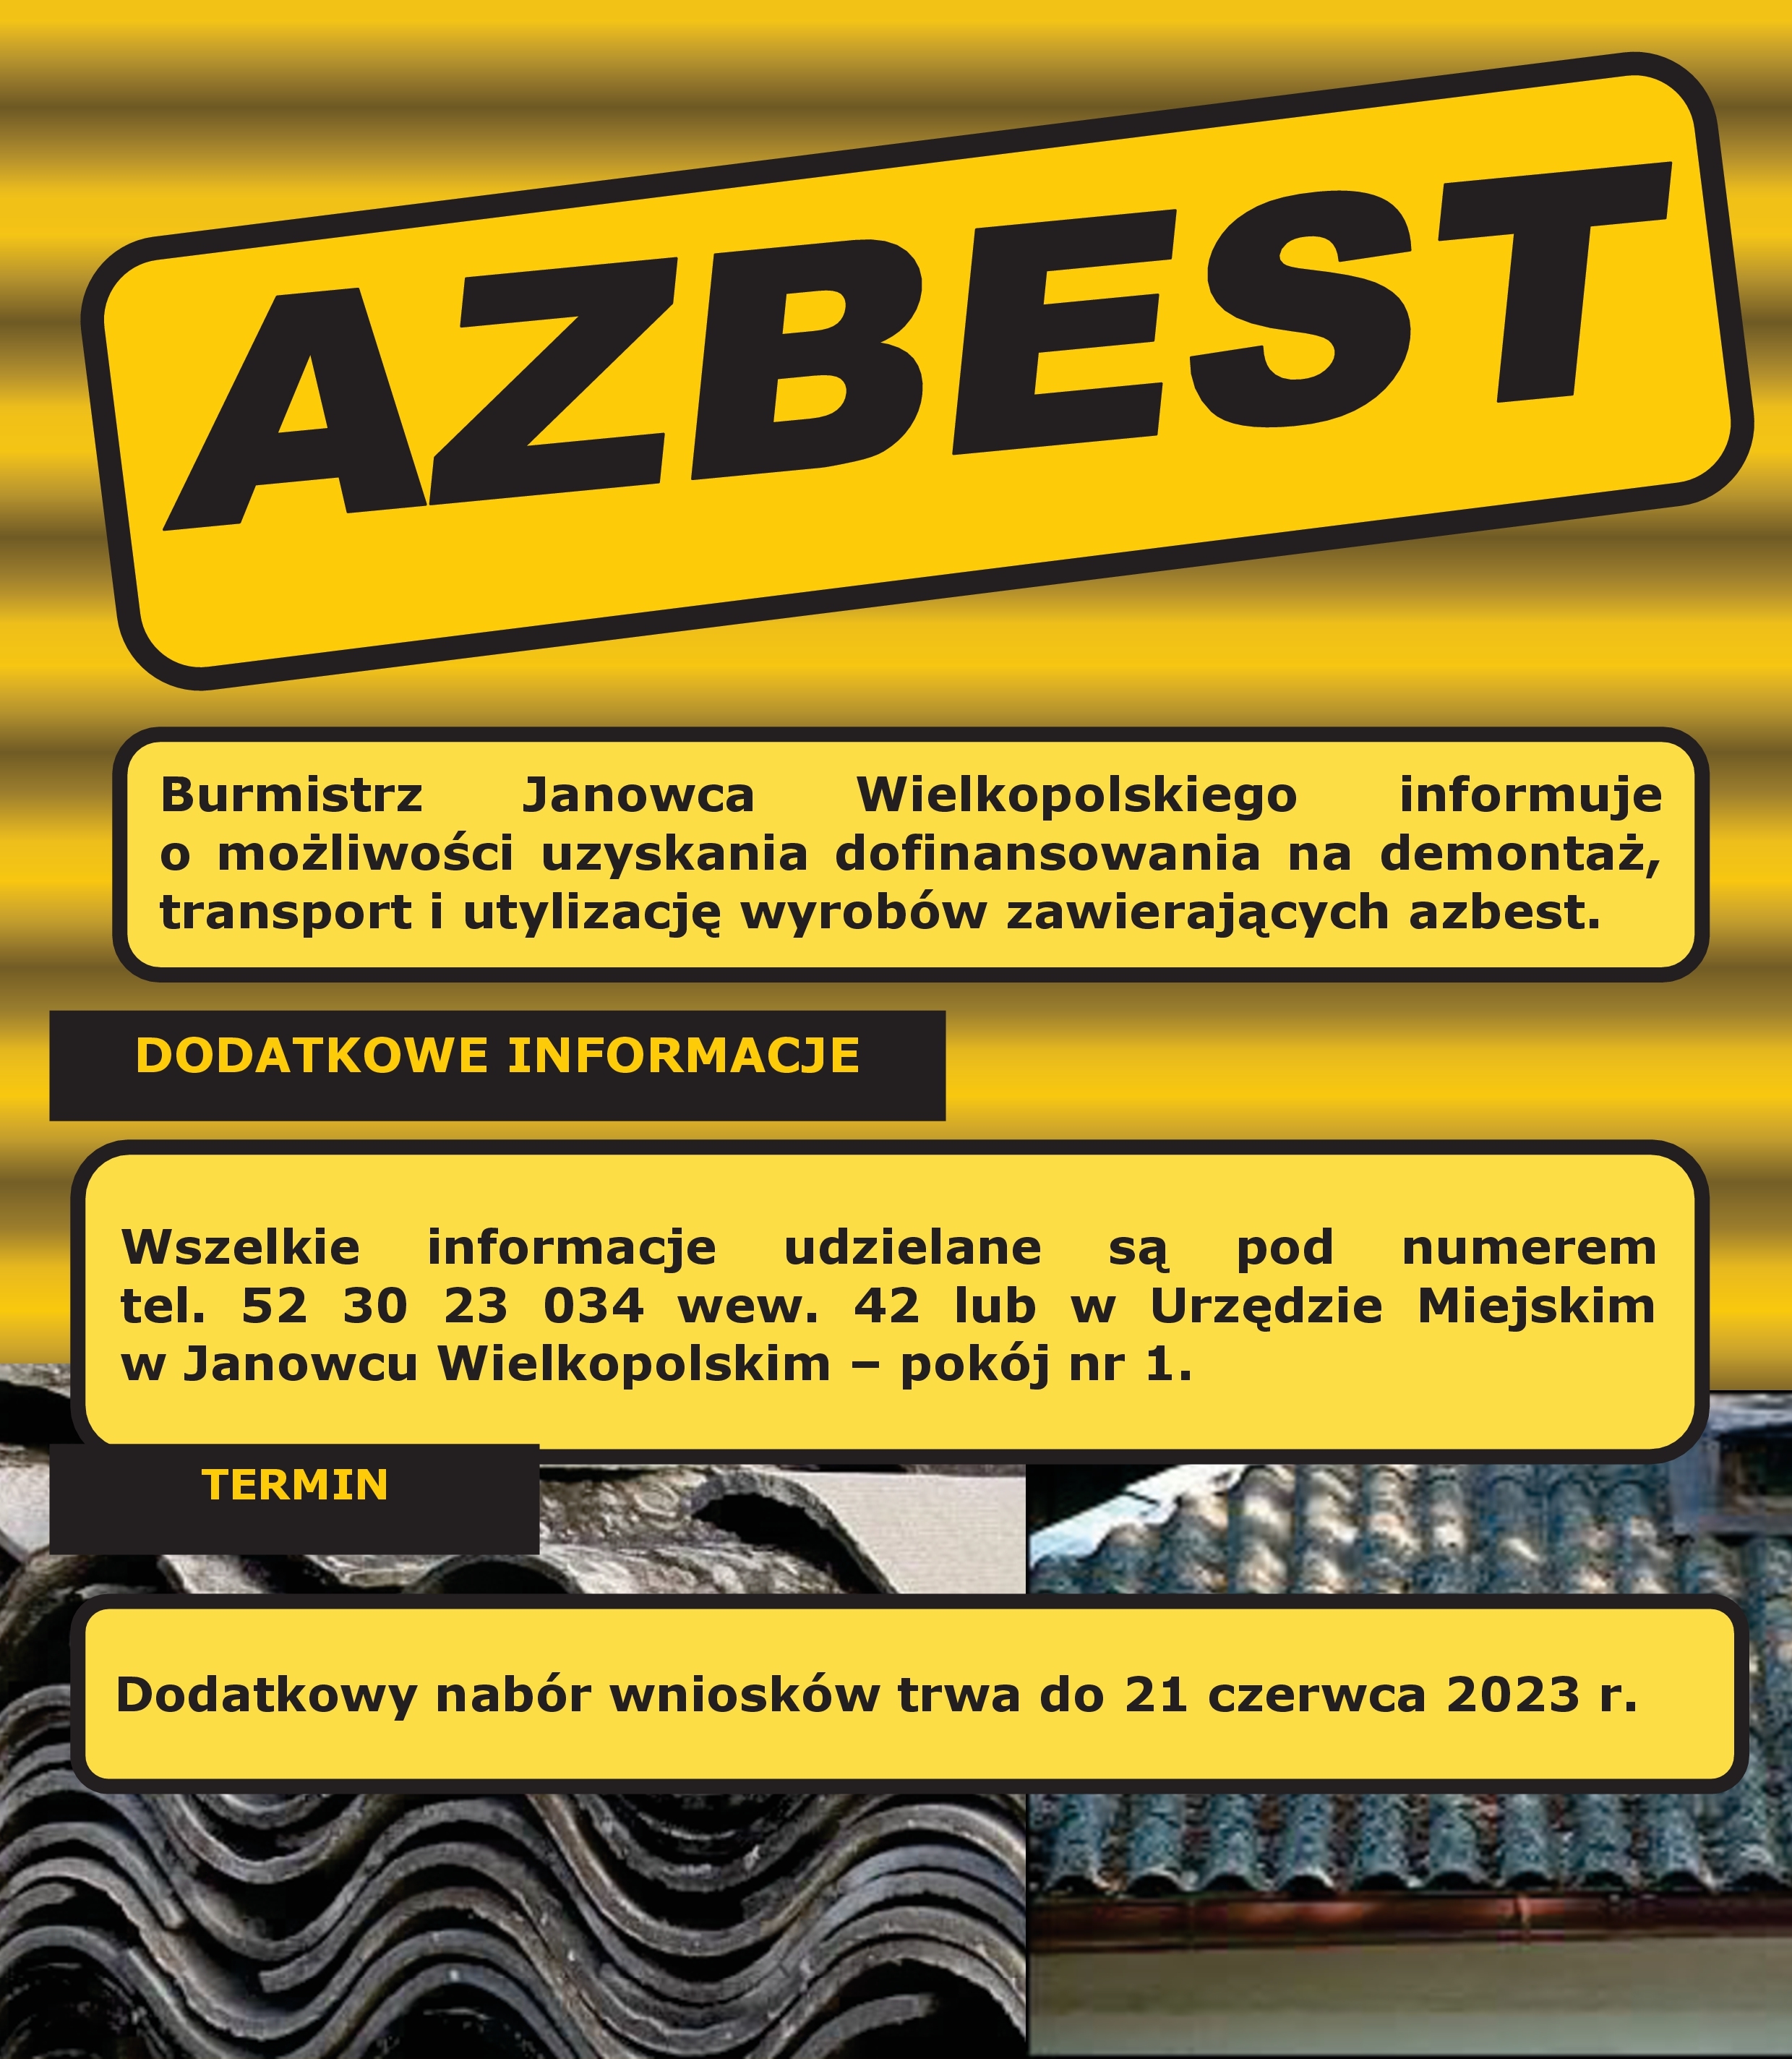 AZBEST - informacja Burmistrza Janowca Wielkopolskiego